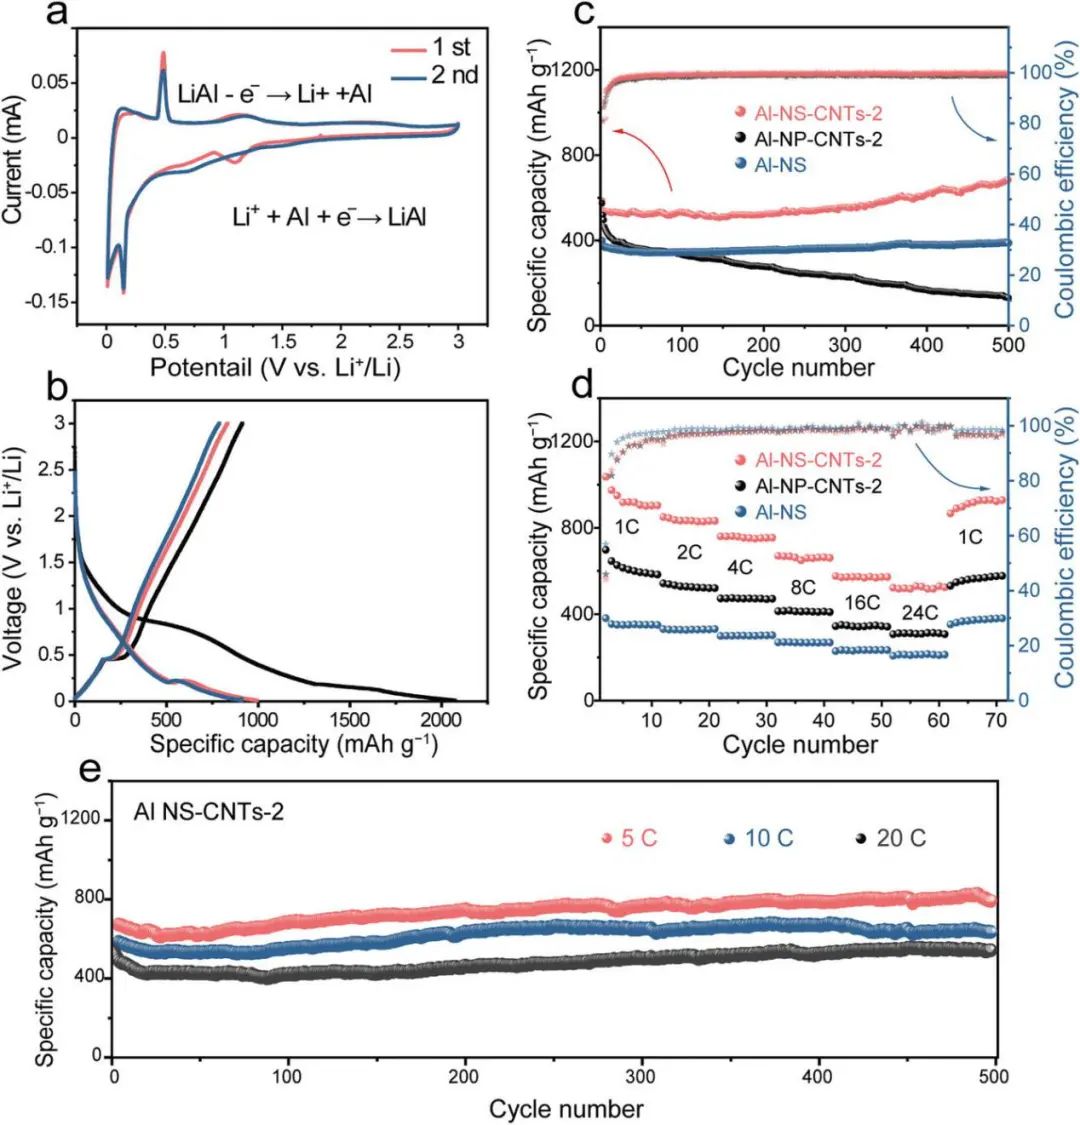 北化工孙晓明/刘文/罗亮AFM: 超薄铝纳米片作为低成本、高性能锂离子电池负极